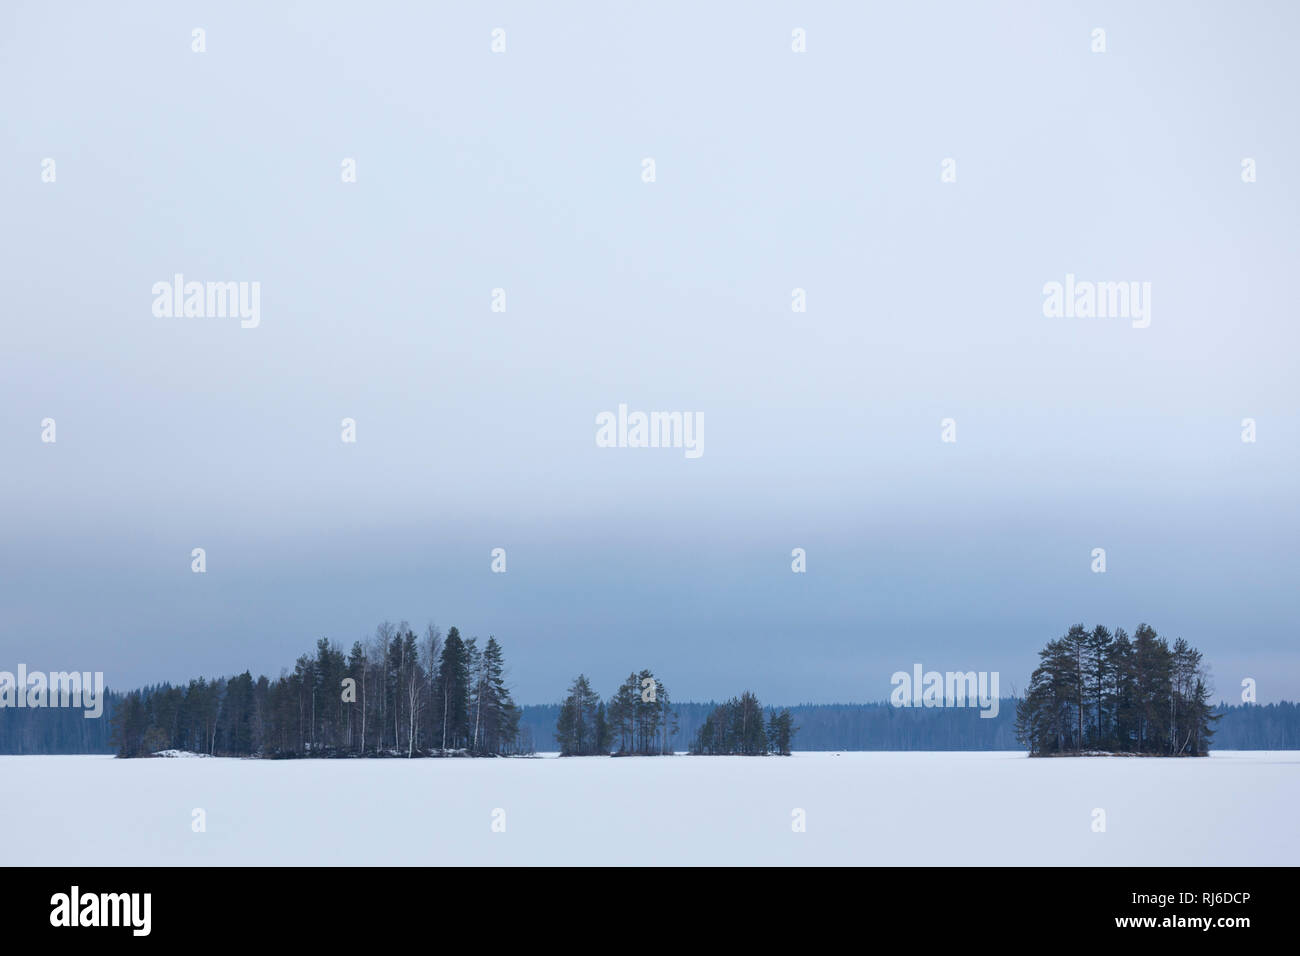 Finnland, Siamaa-Gebiet, Landschaft mit Schnee und Bäumen im Winter Stock Photo